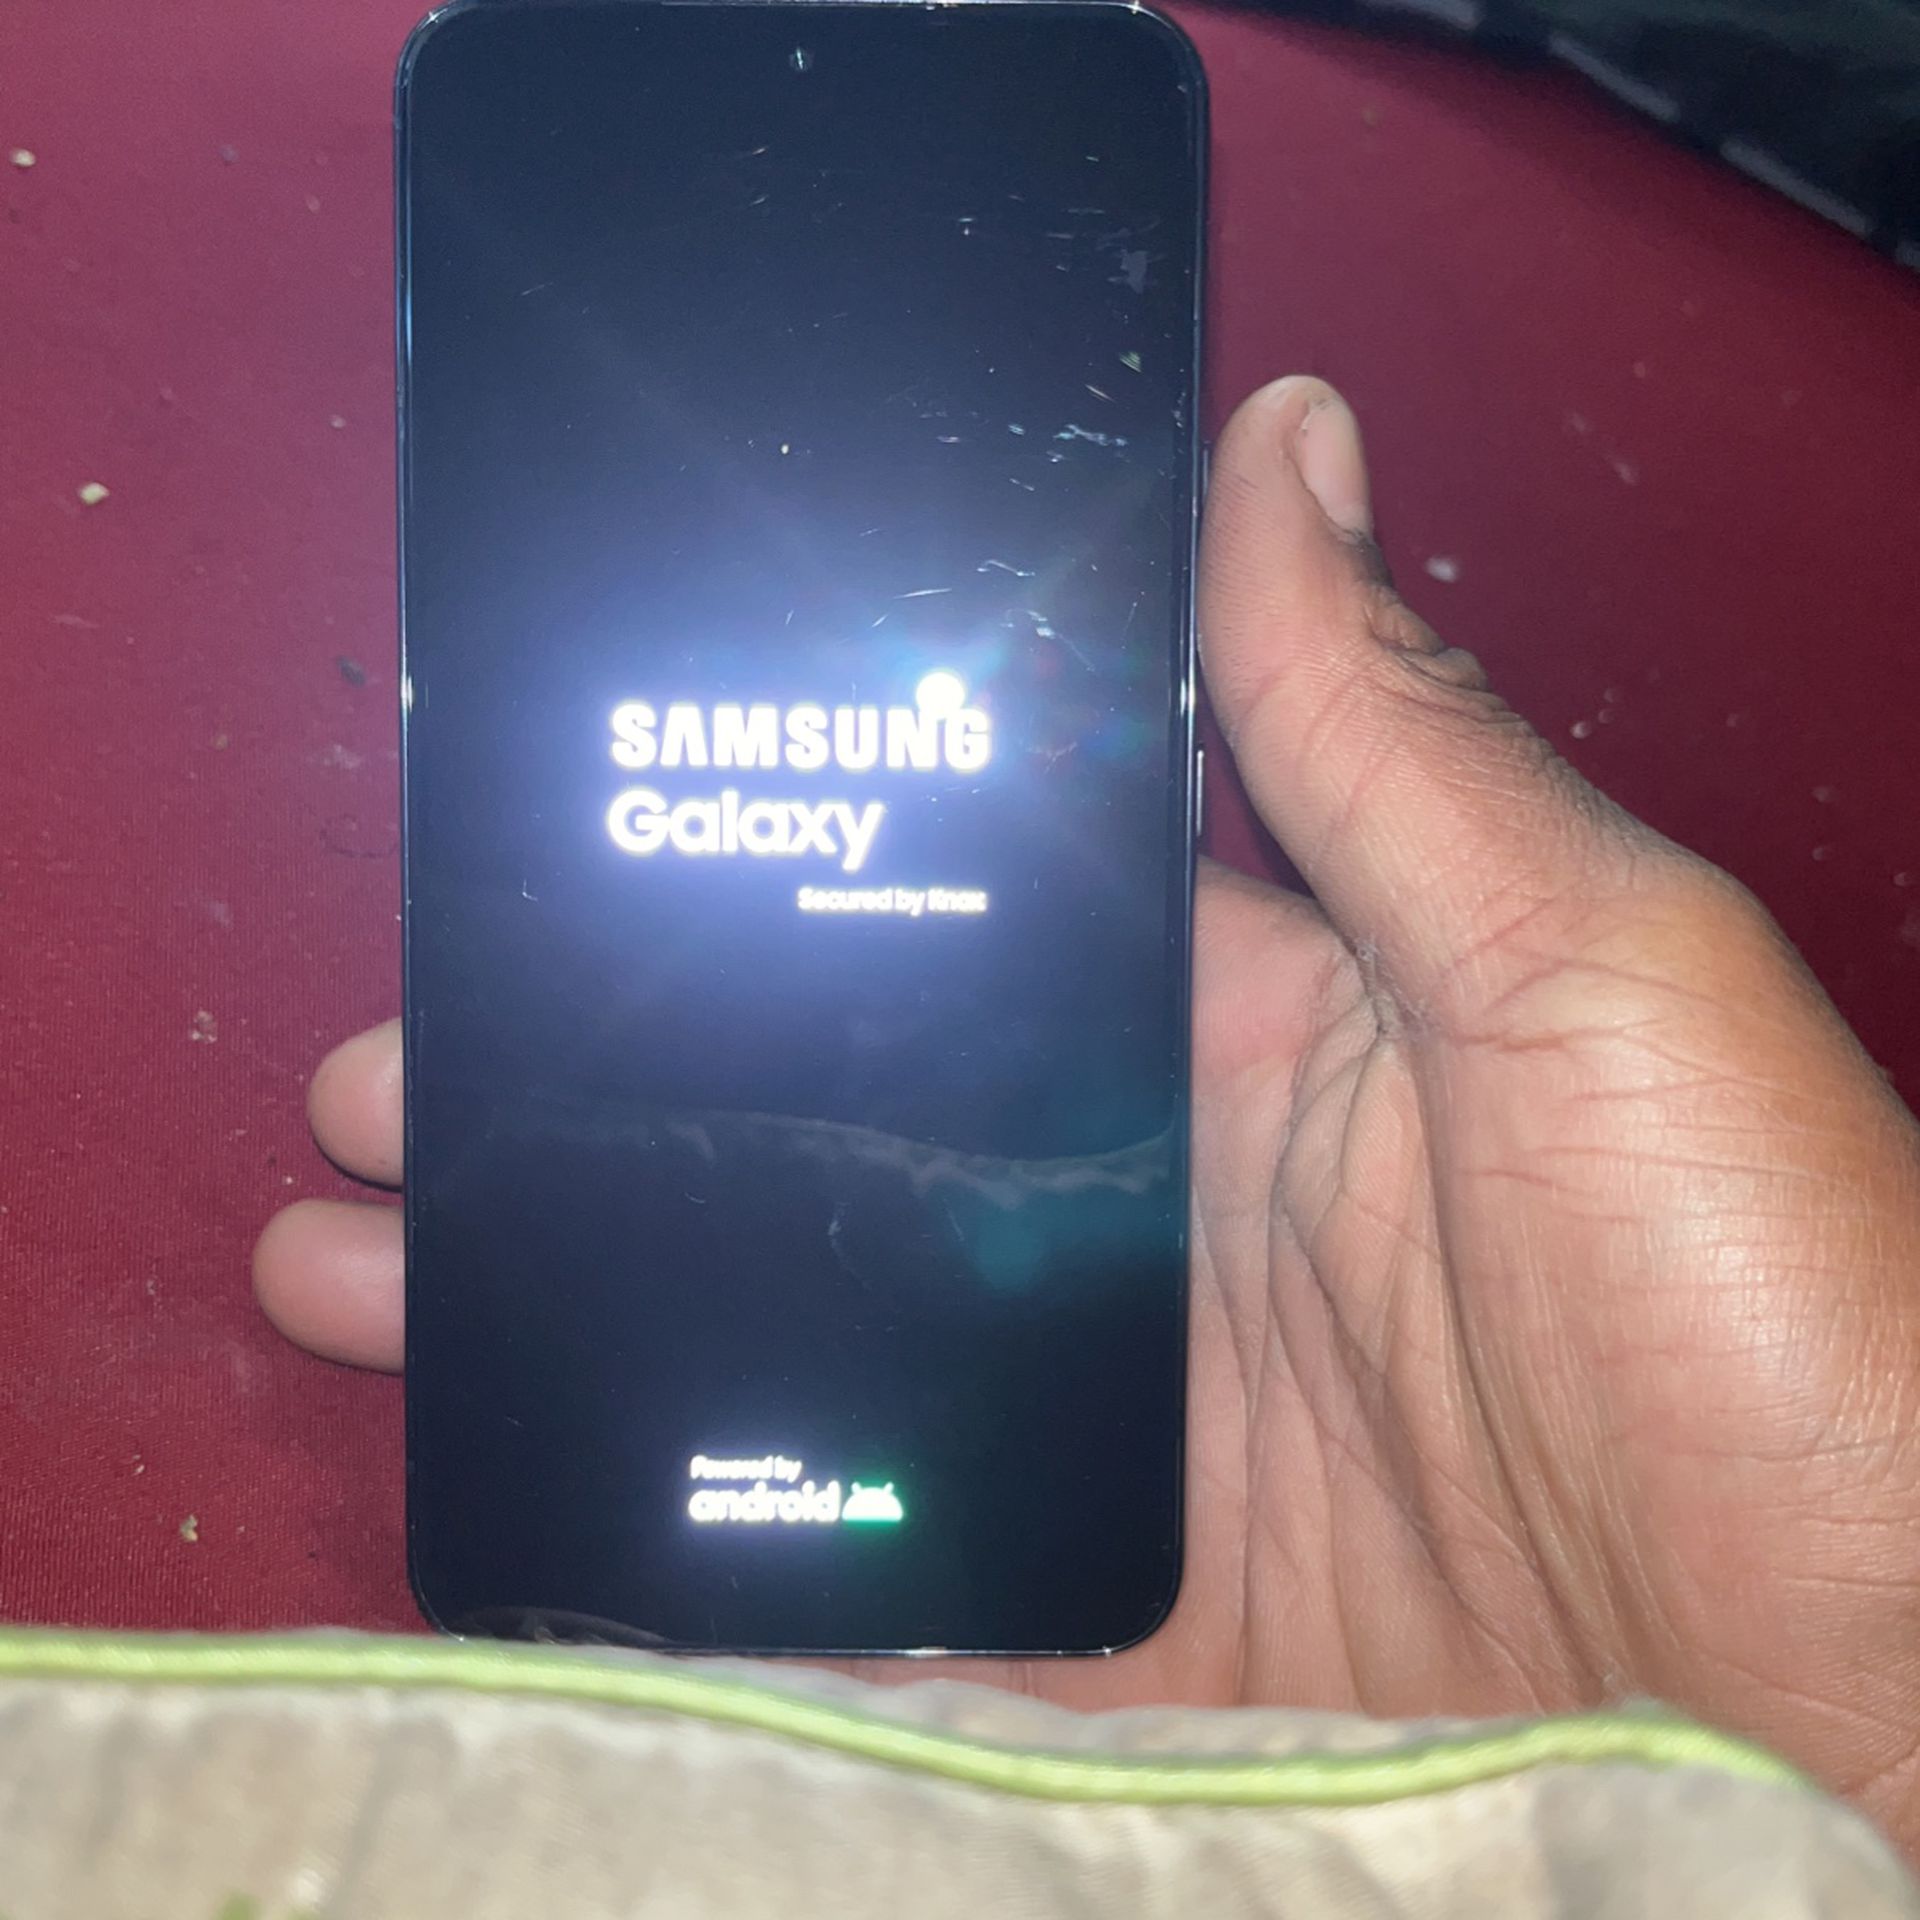 Samsung Galaxy 22